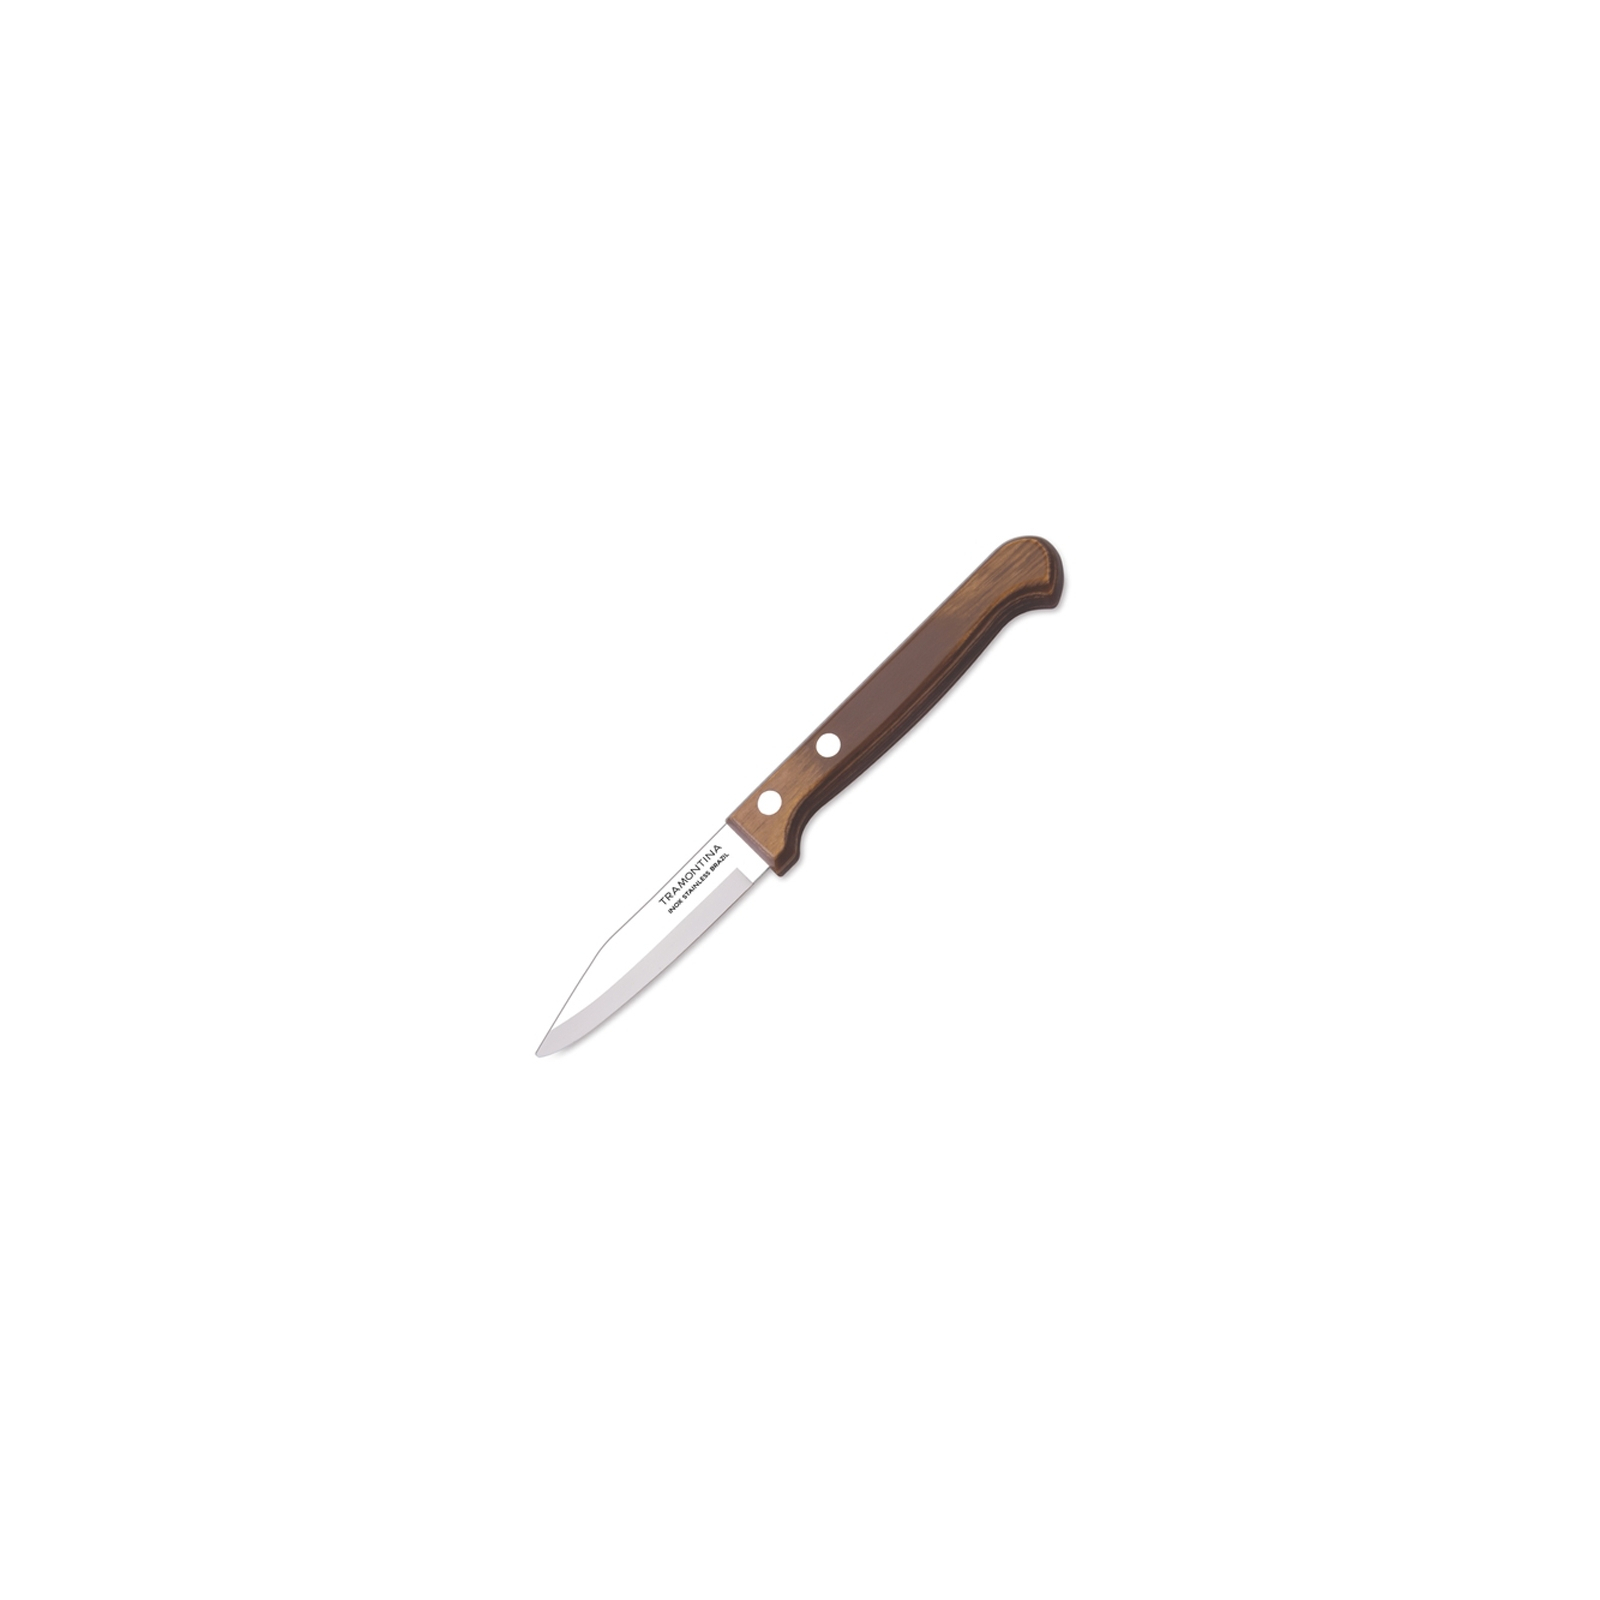 Кухонный нож Tramontina Polywood для овощей 76 мм (21118/193)